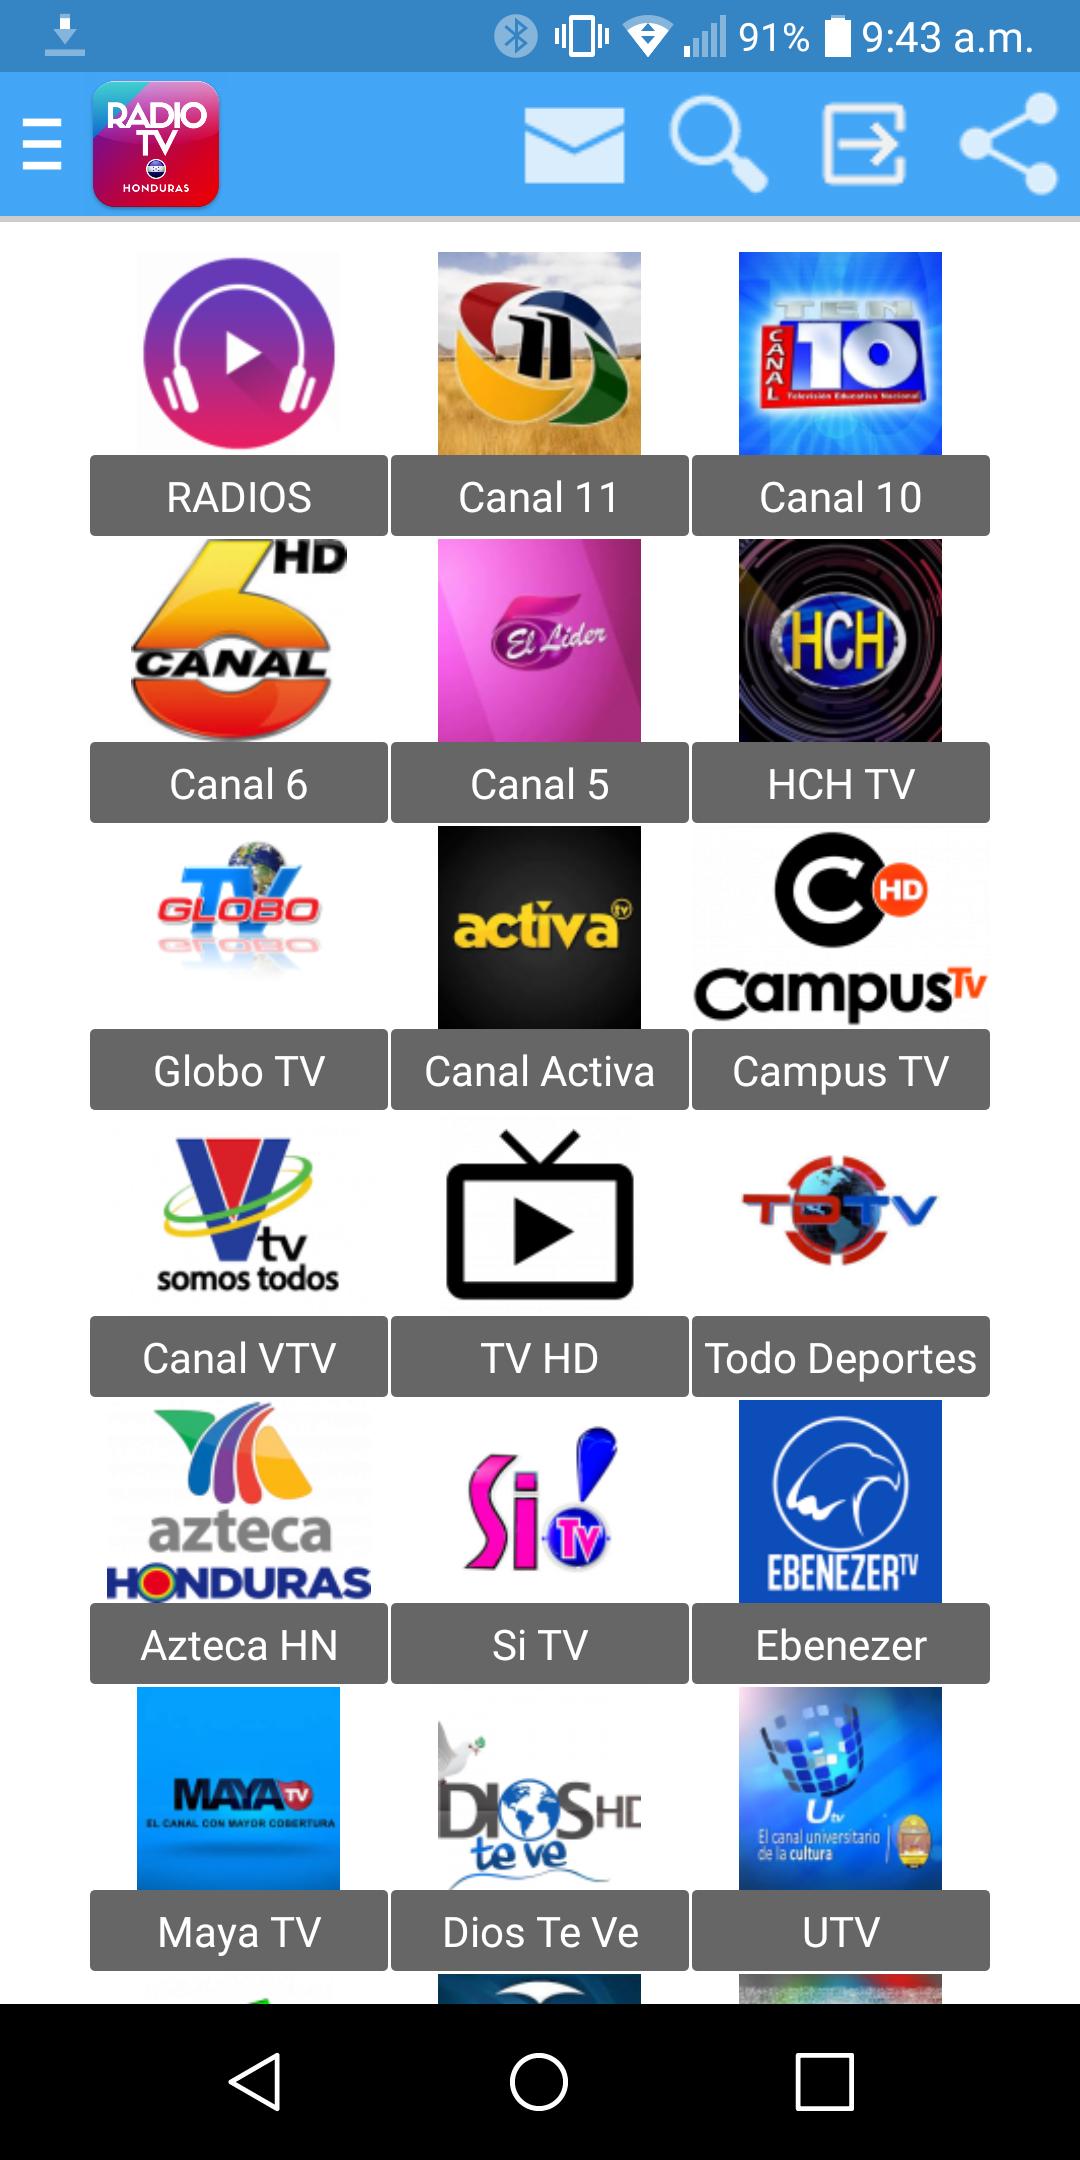 TV de Honduras en Vivo for Android - APK Download